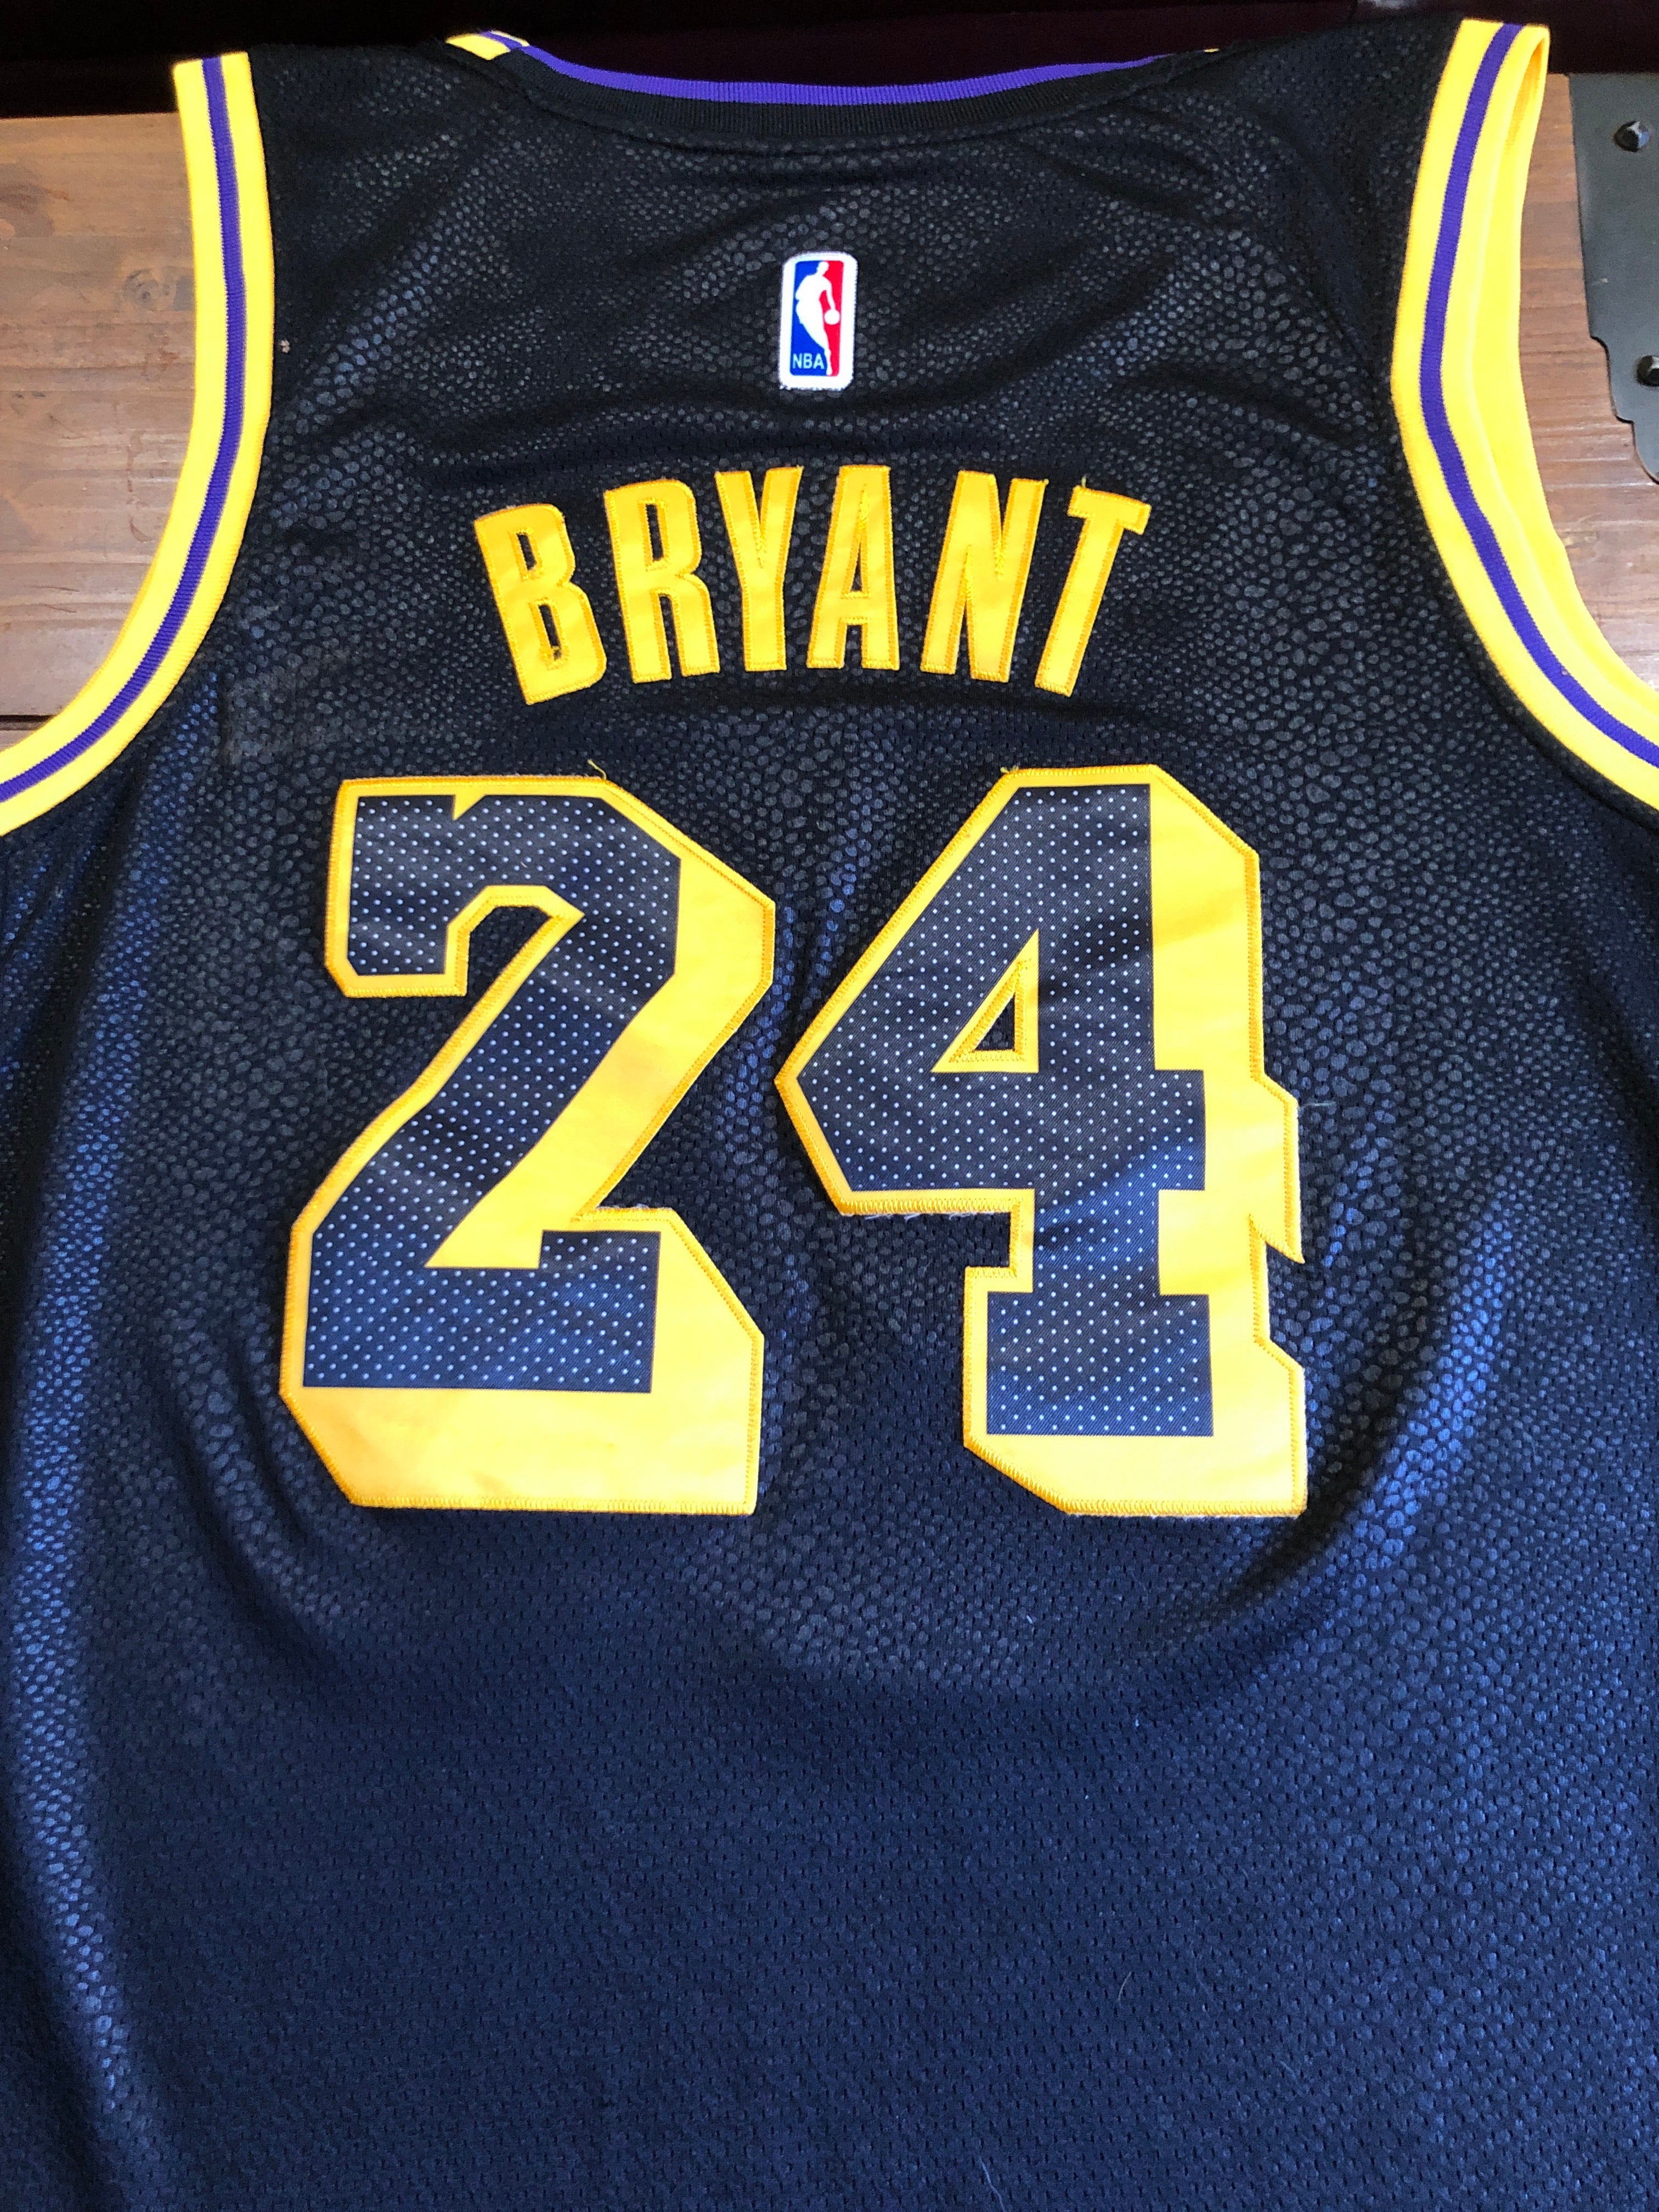 Kobe Bryant Lakers “Wish” Size 50 Nike Jersey